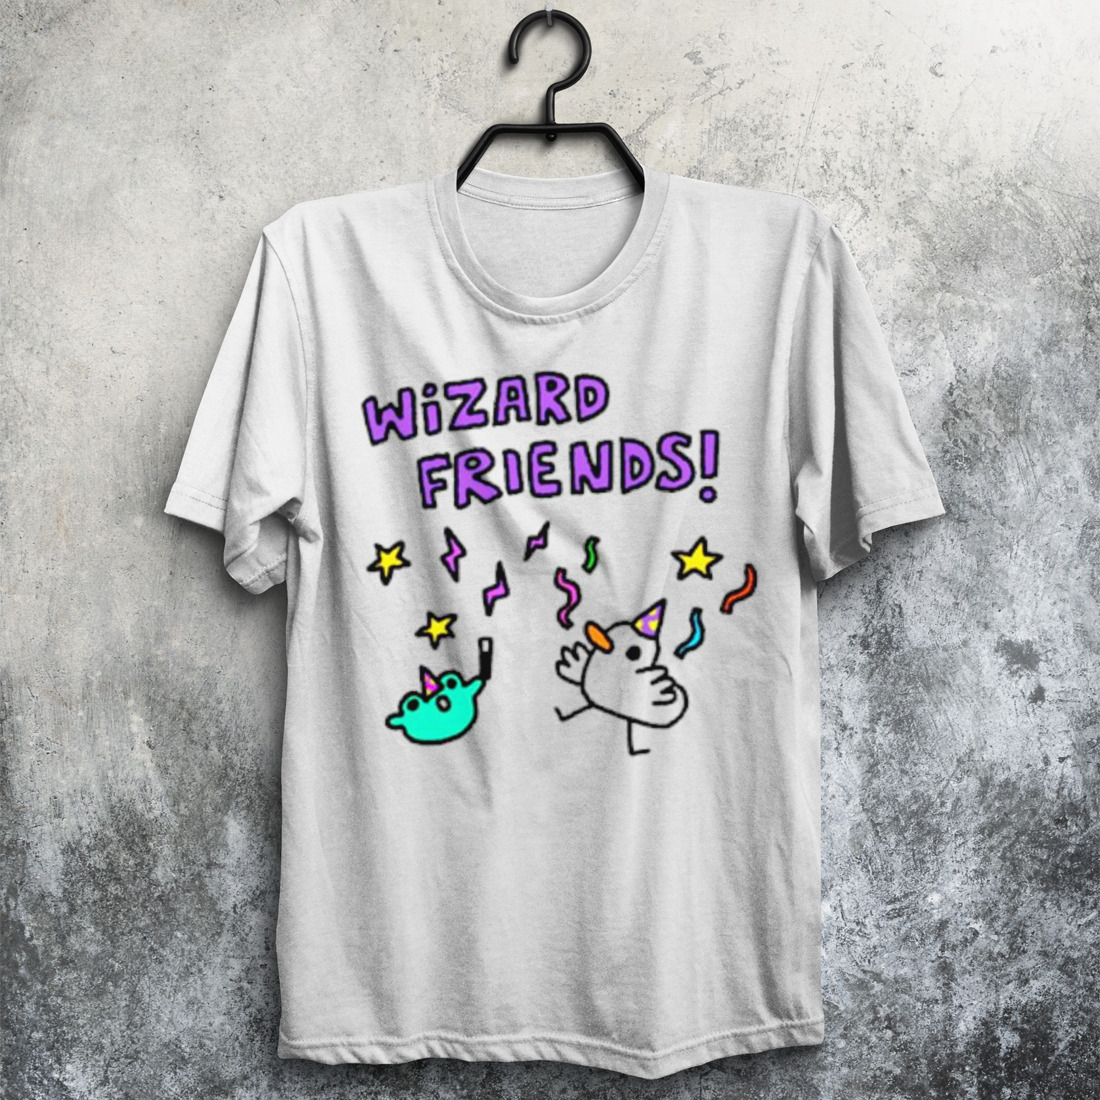 Wizard friends shirt